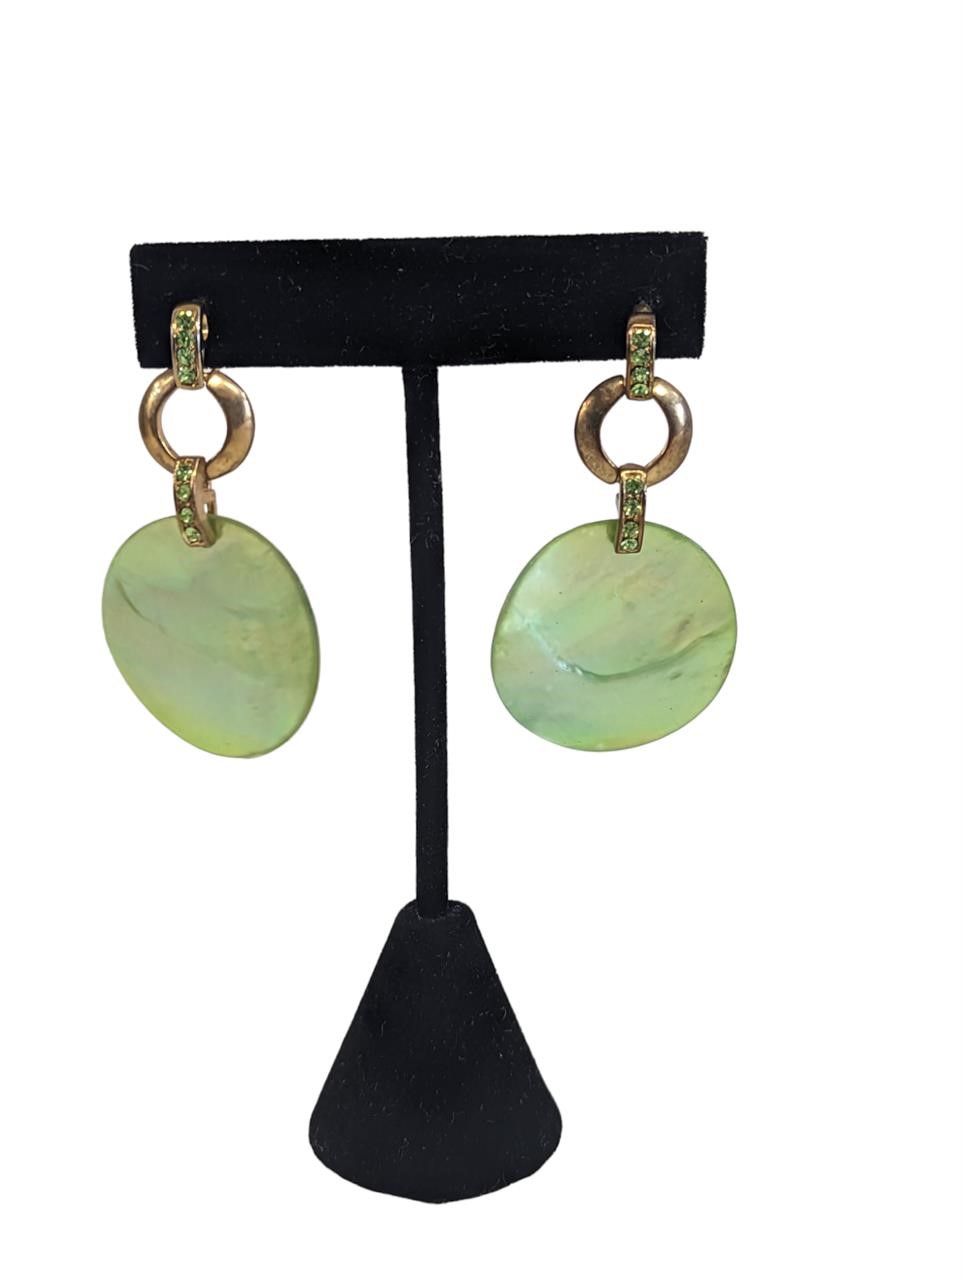 Green shell chip pendant beads Earrings